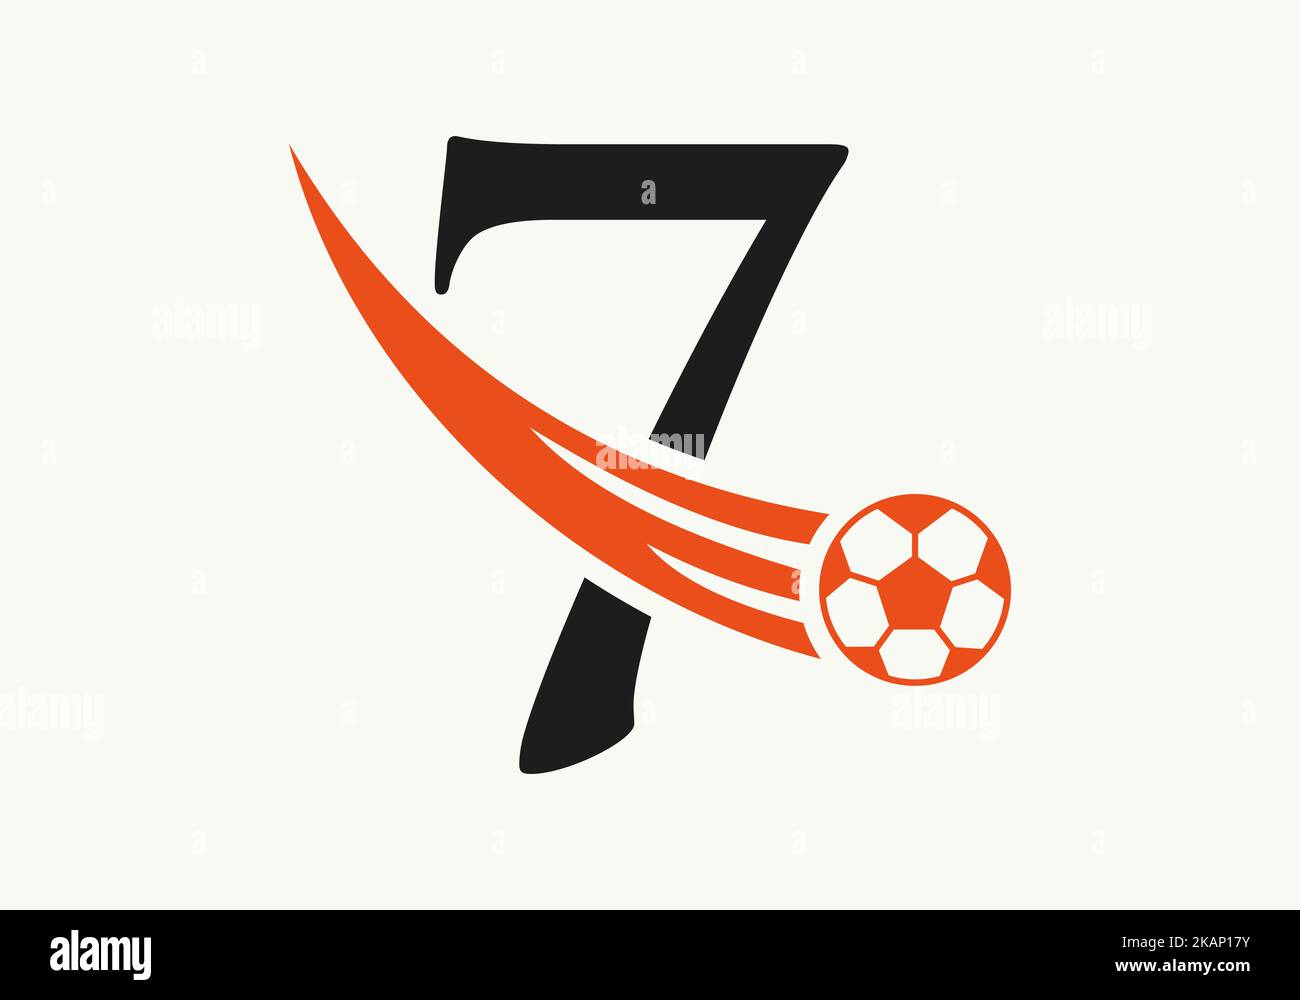 Cancha de futbol 7 Imágenes vectoriales de stock - Alamy